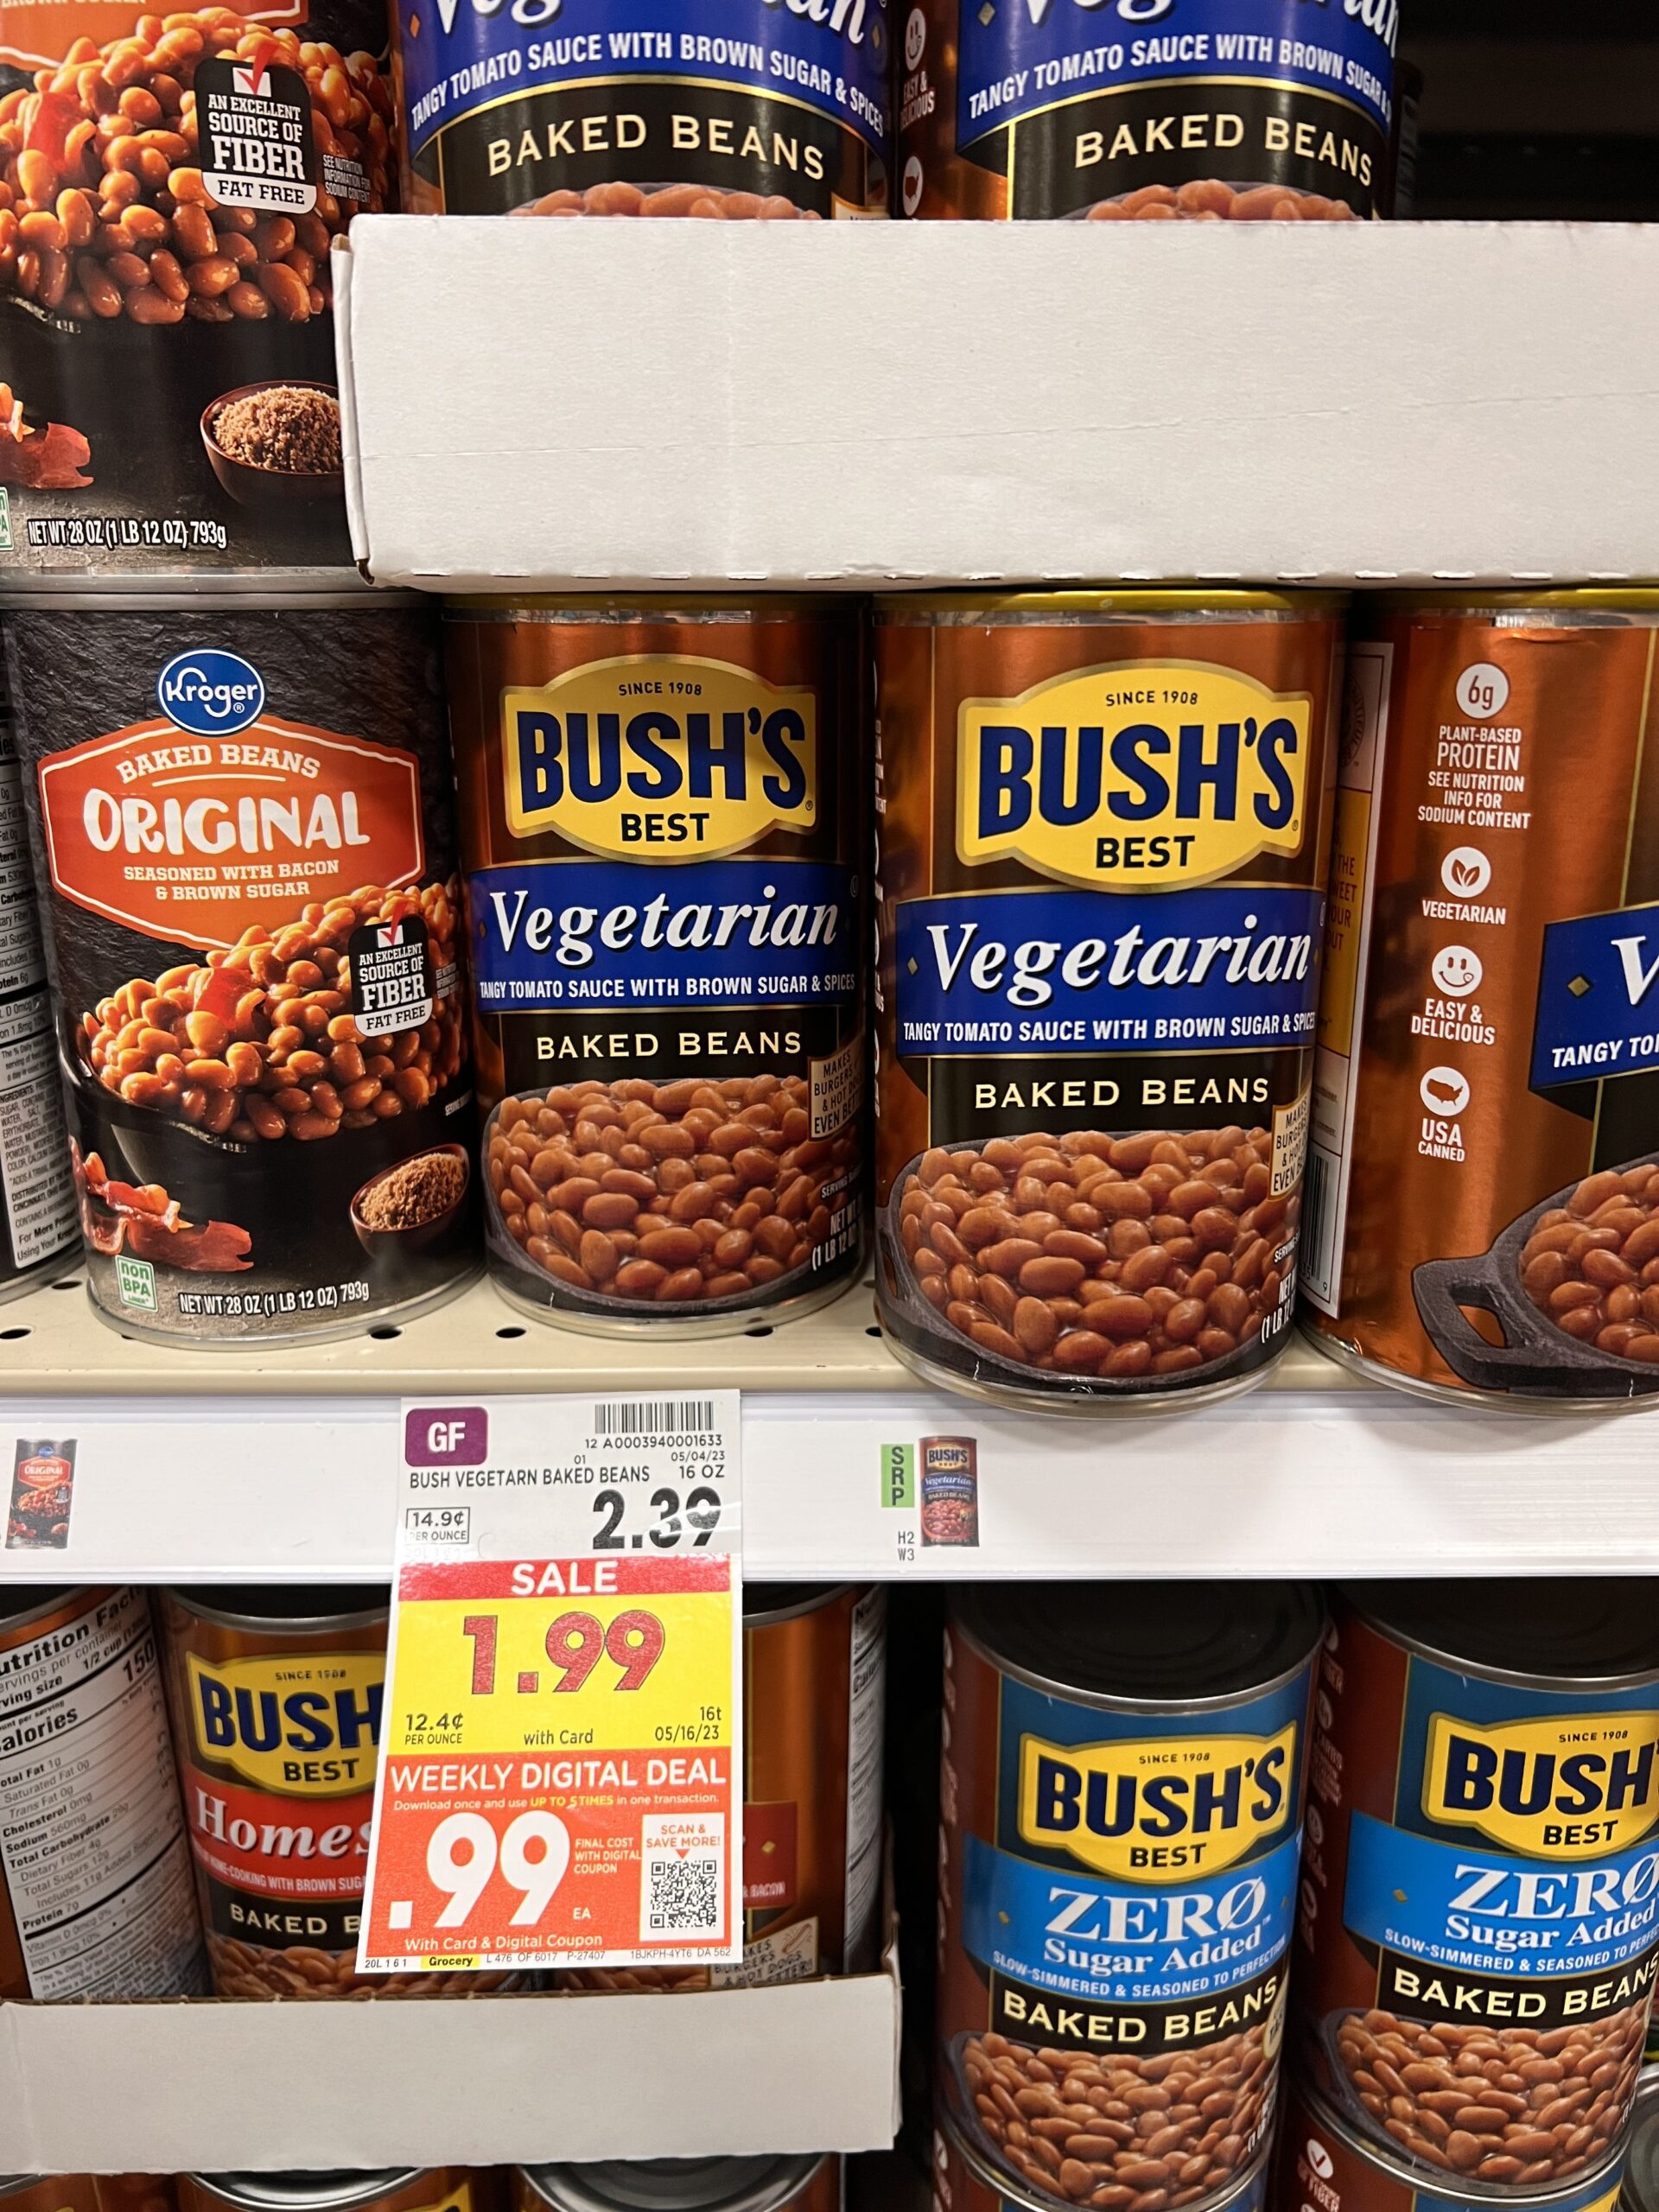 bush's best beans kroger shelf image 3